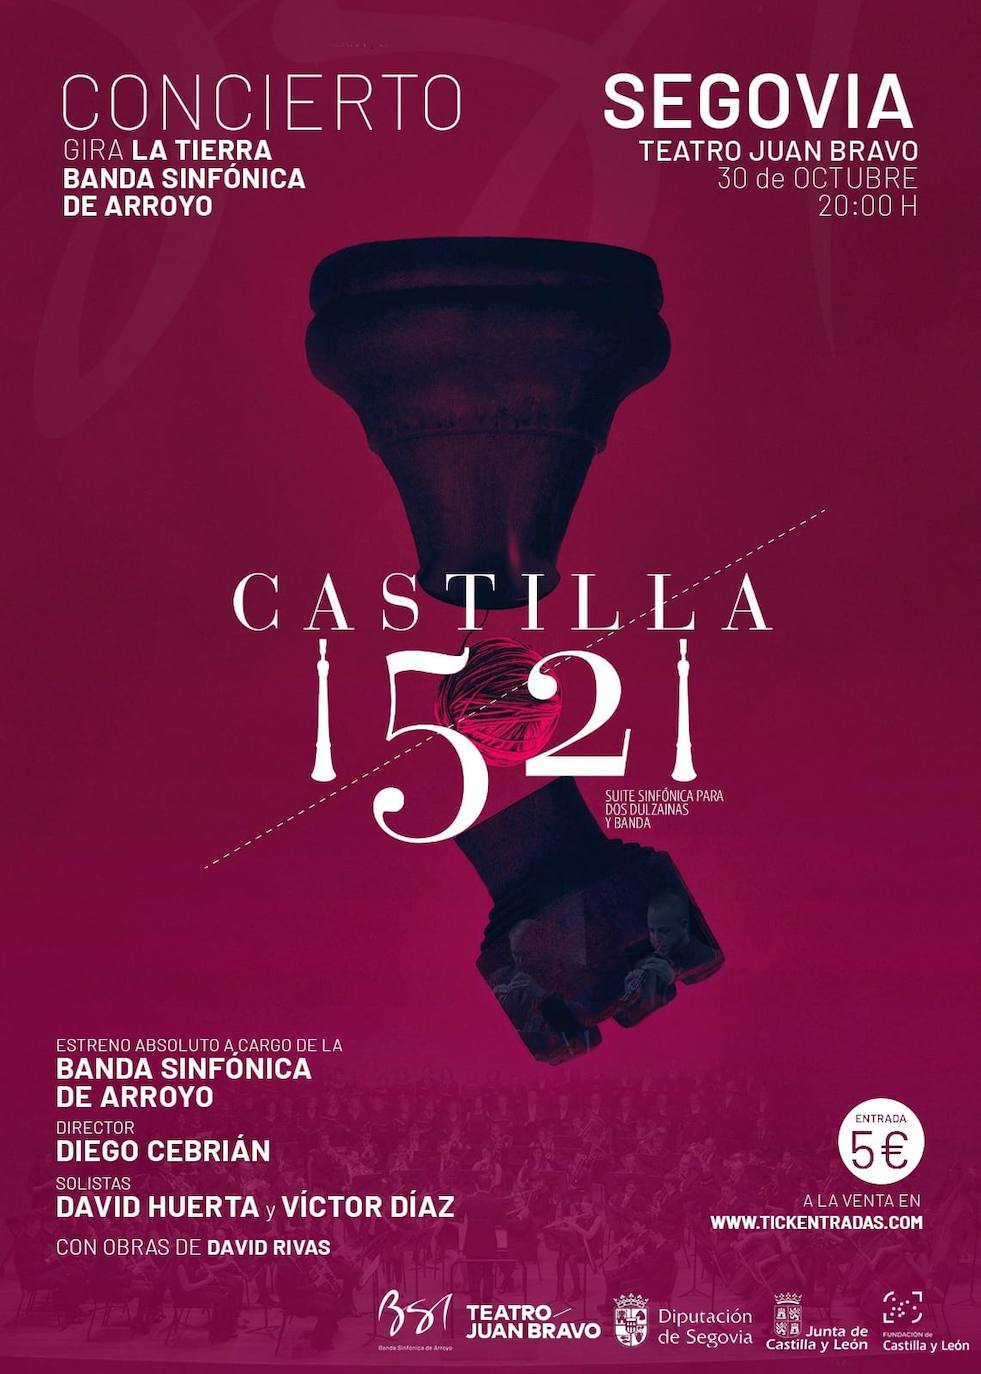 Imagen - Cartel del gran evento musical que se celebrará en Segovia